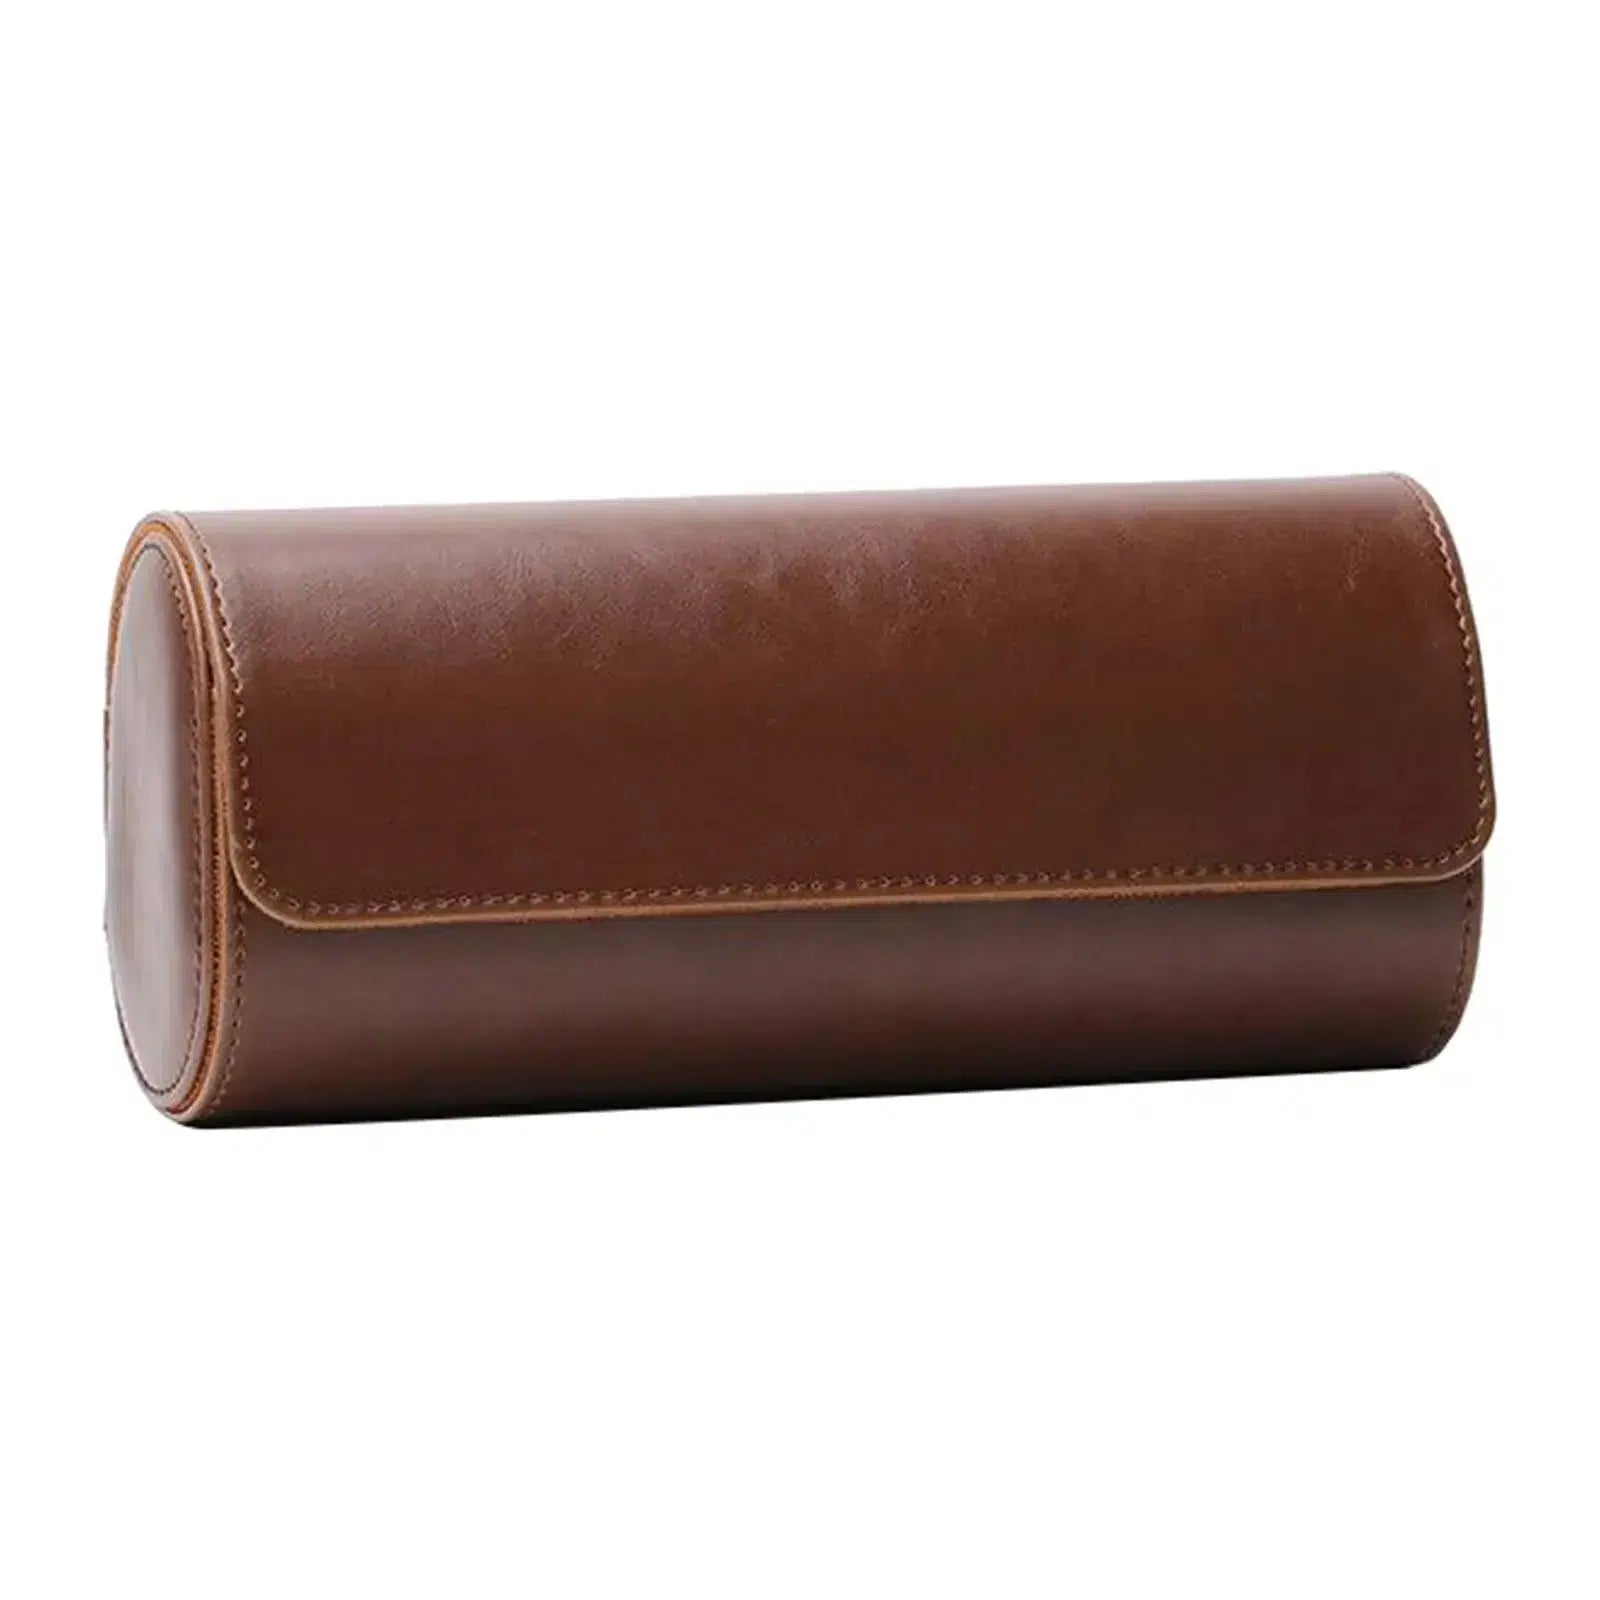 Watch Box - Leather Case-1-Le Remontoir